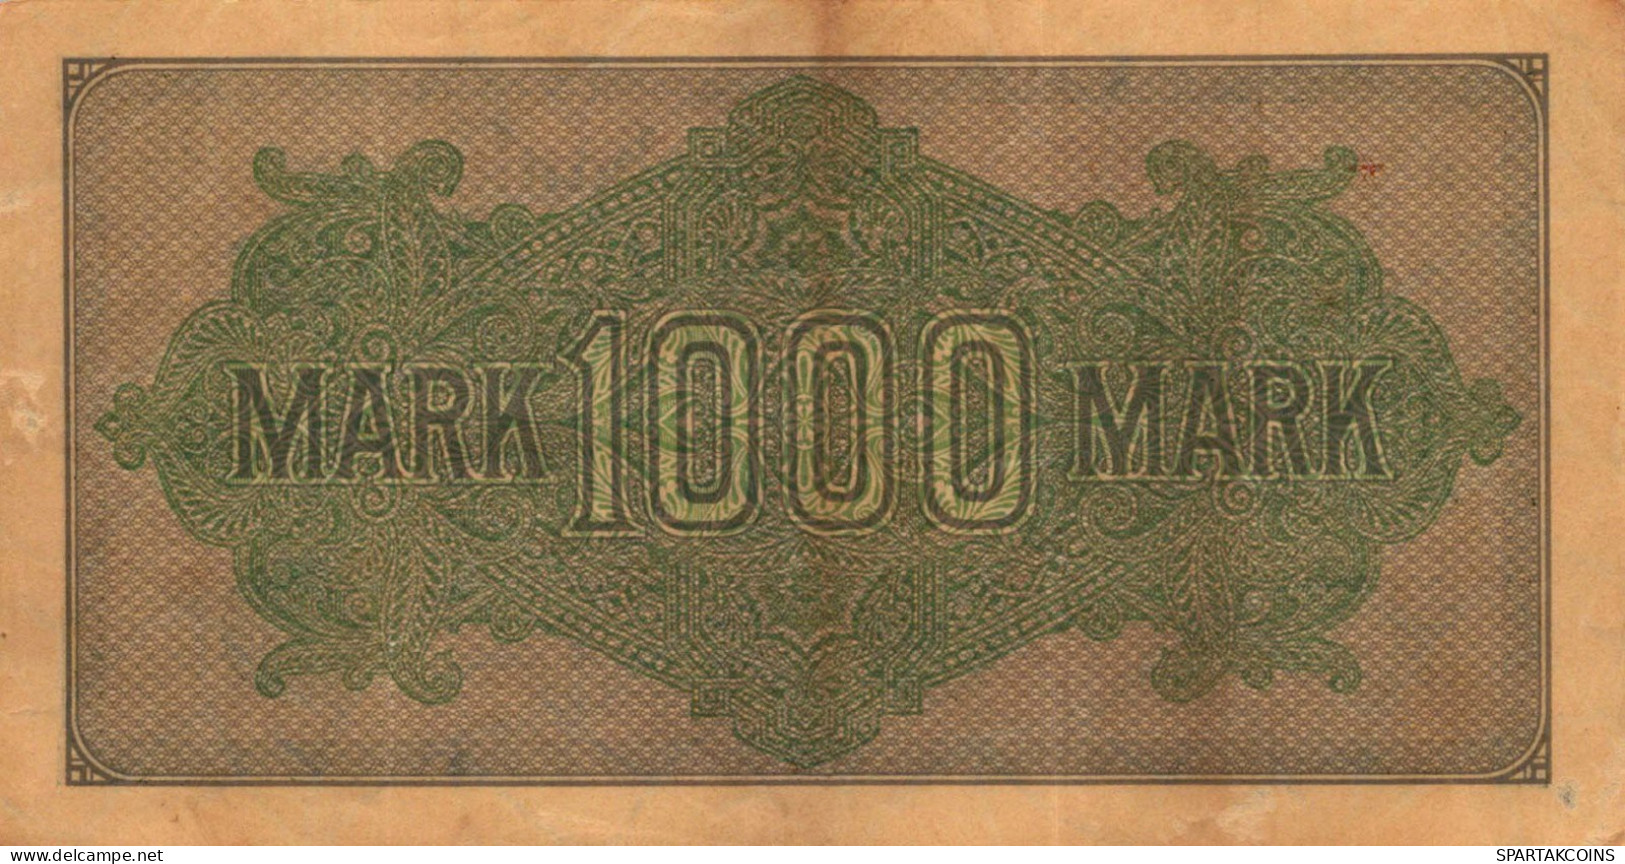 1000 MARK 1922 Stadt BERLIN DEUTSCHLAND Papiergeld Banknote #PL461 - [11] Emisiones Locales